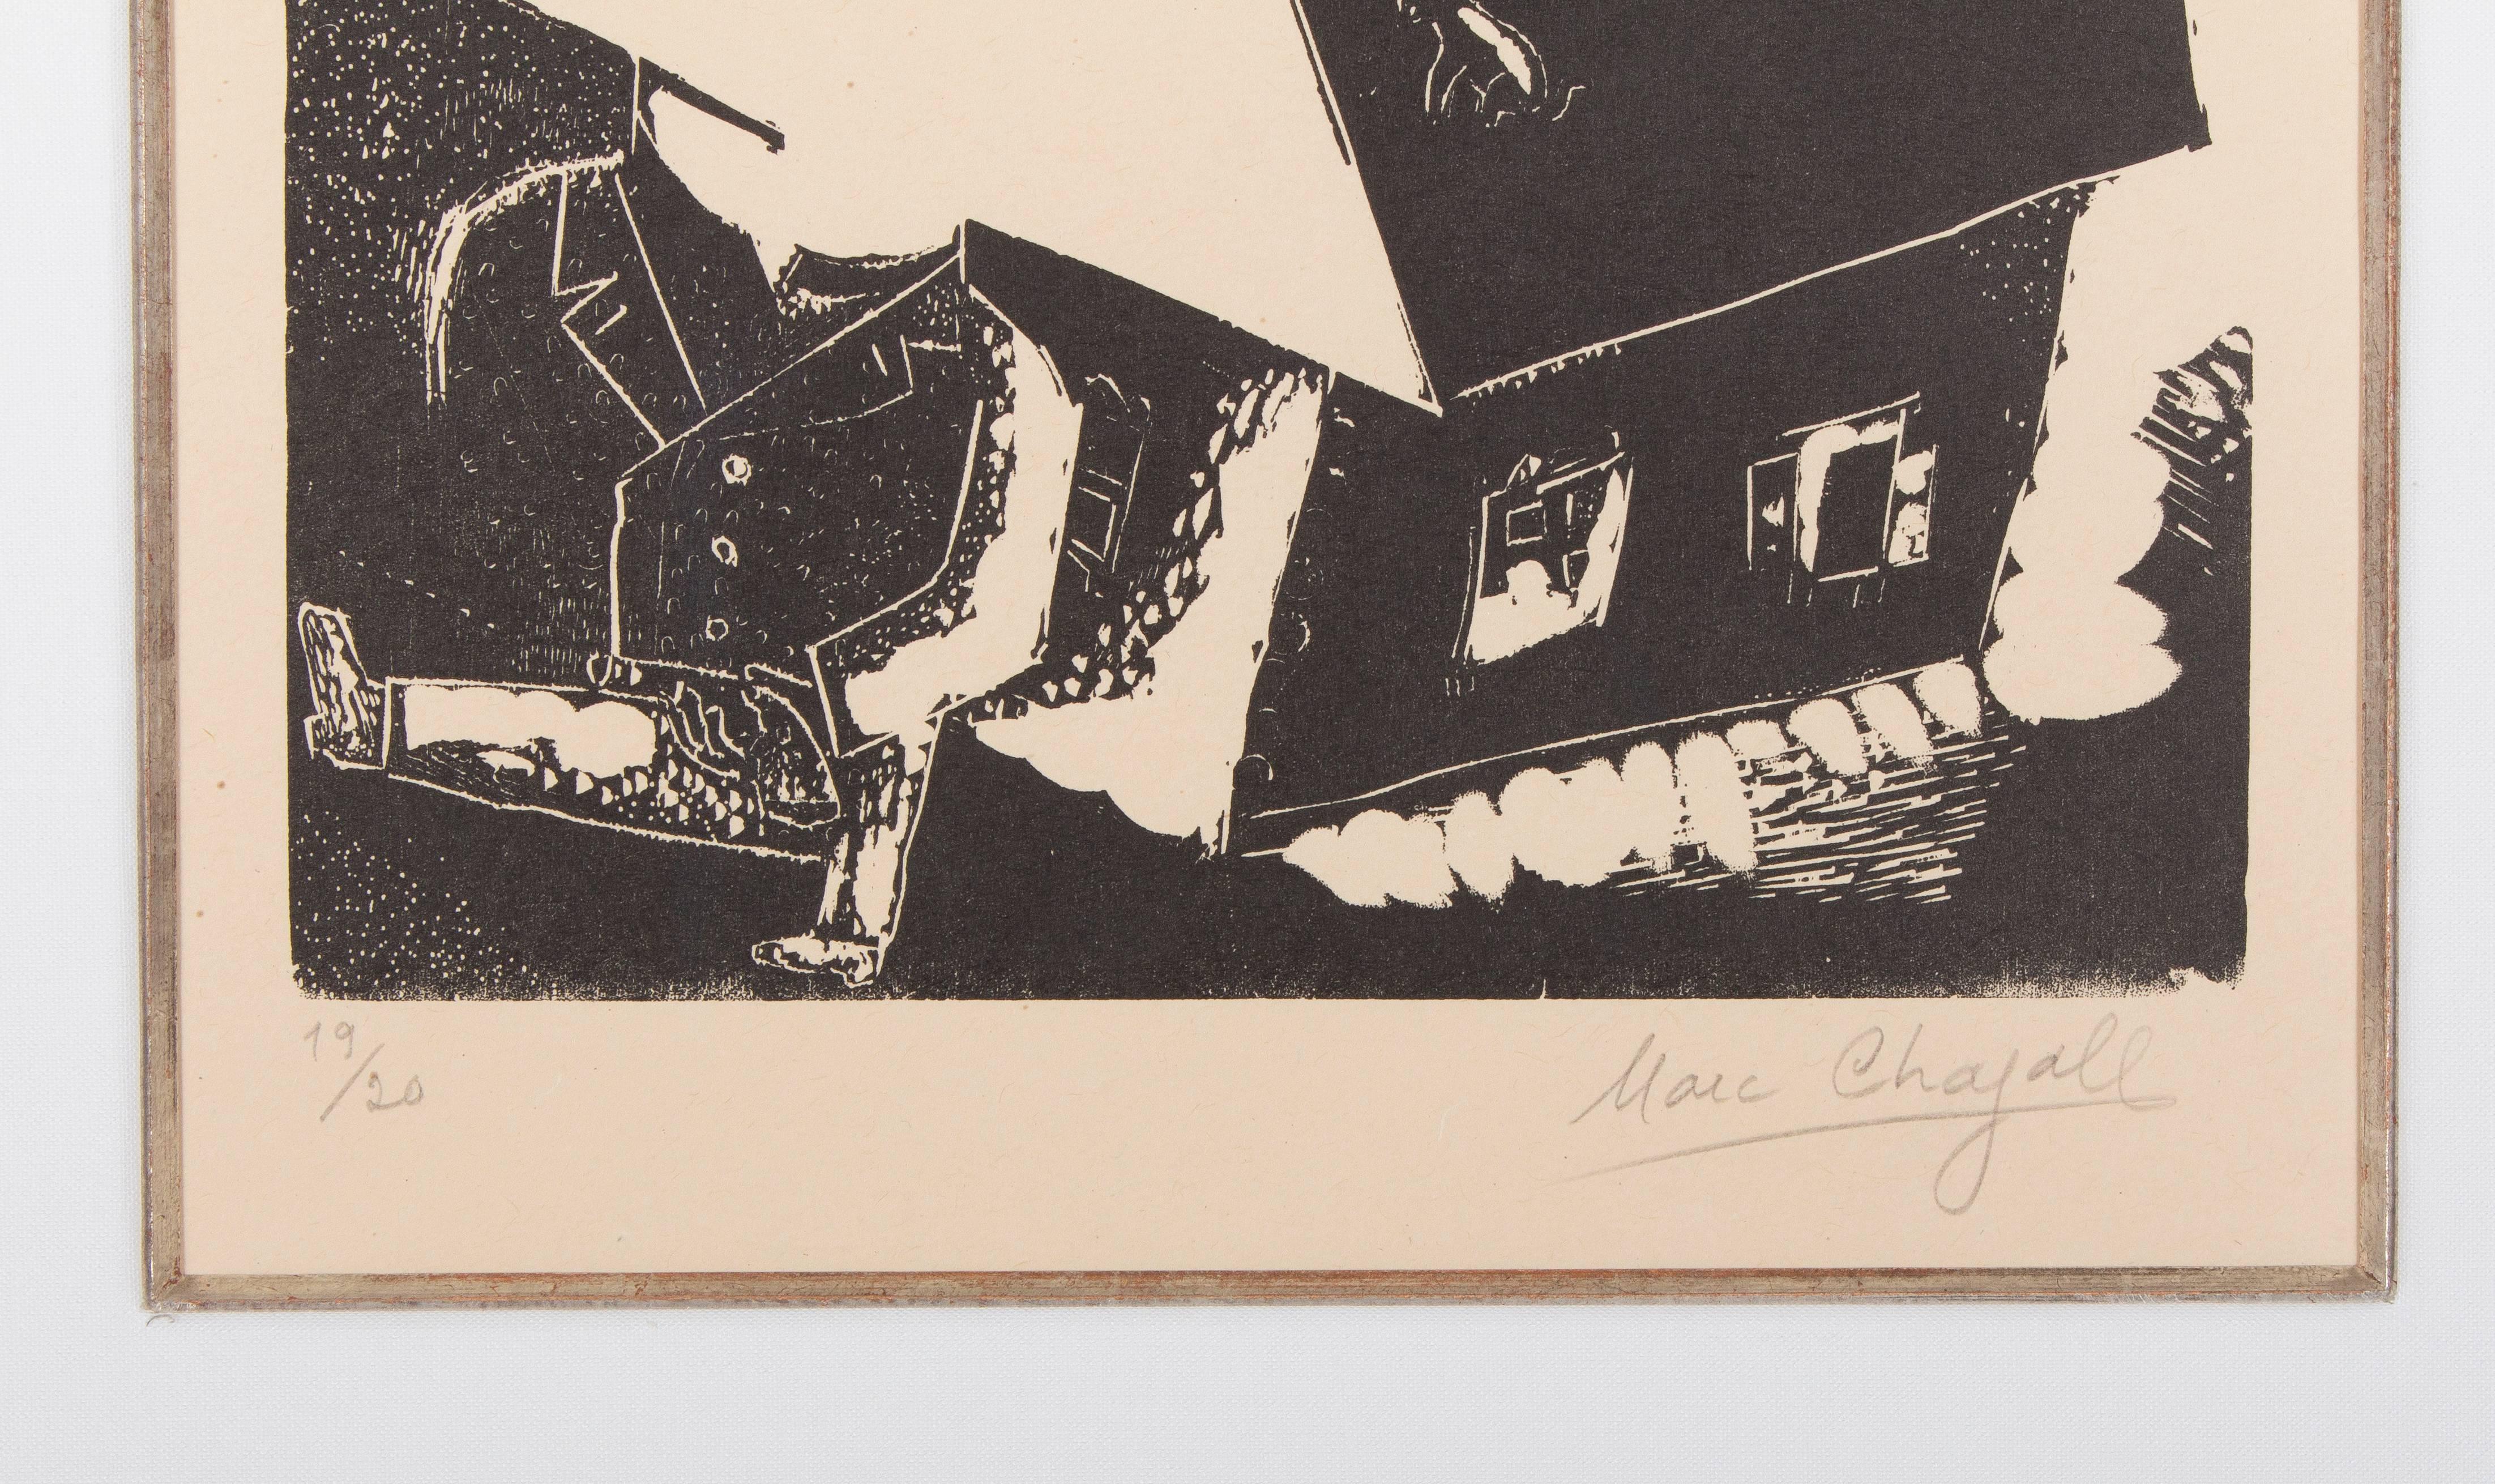 French Marc Chagall, La botte sur le toit, Berlin 1922/23 For Sale